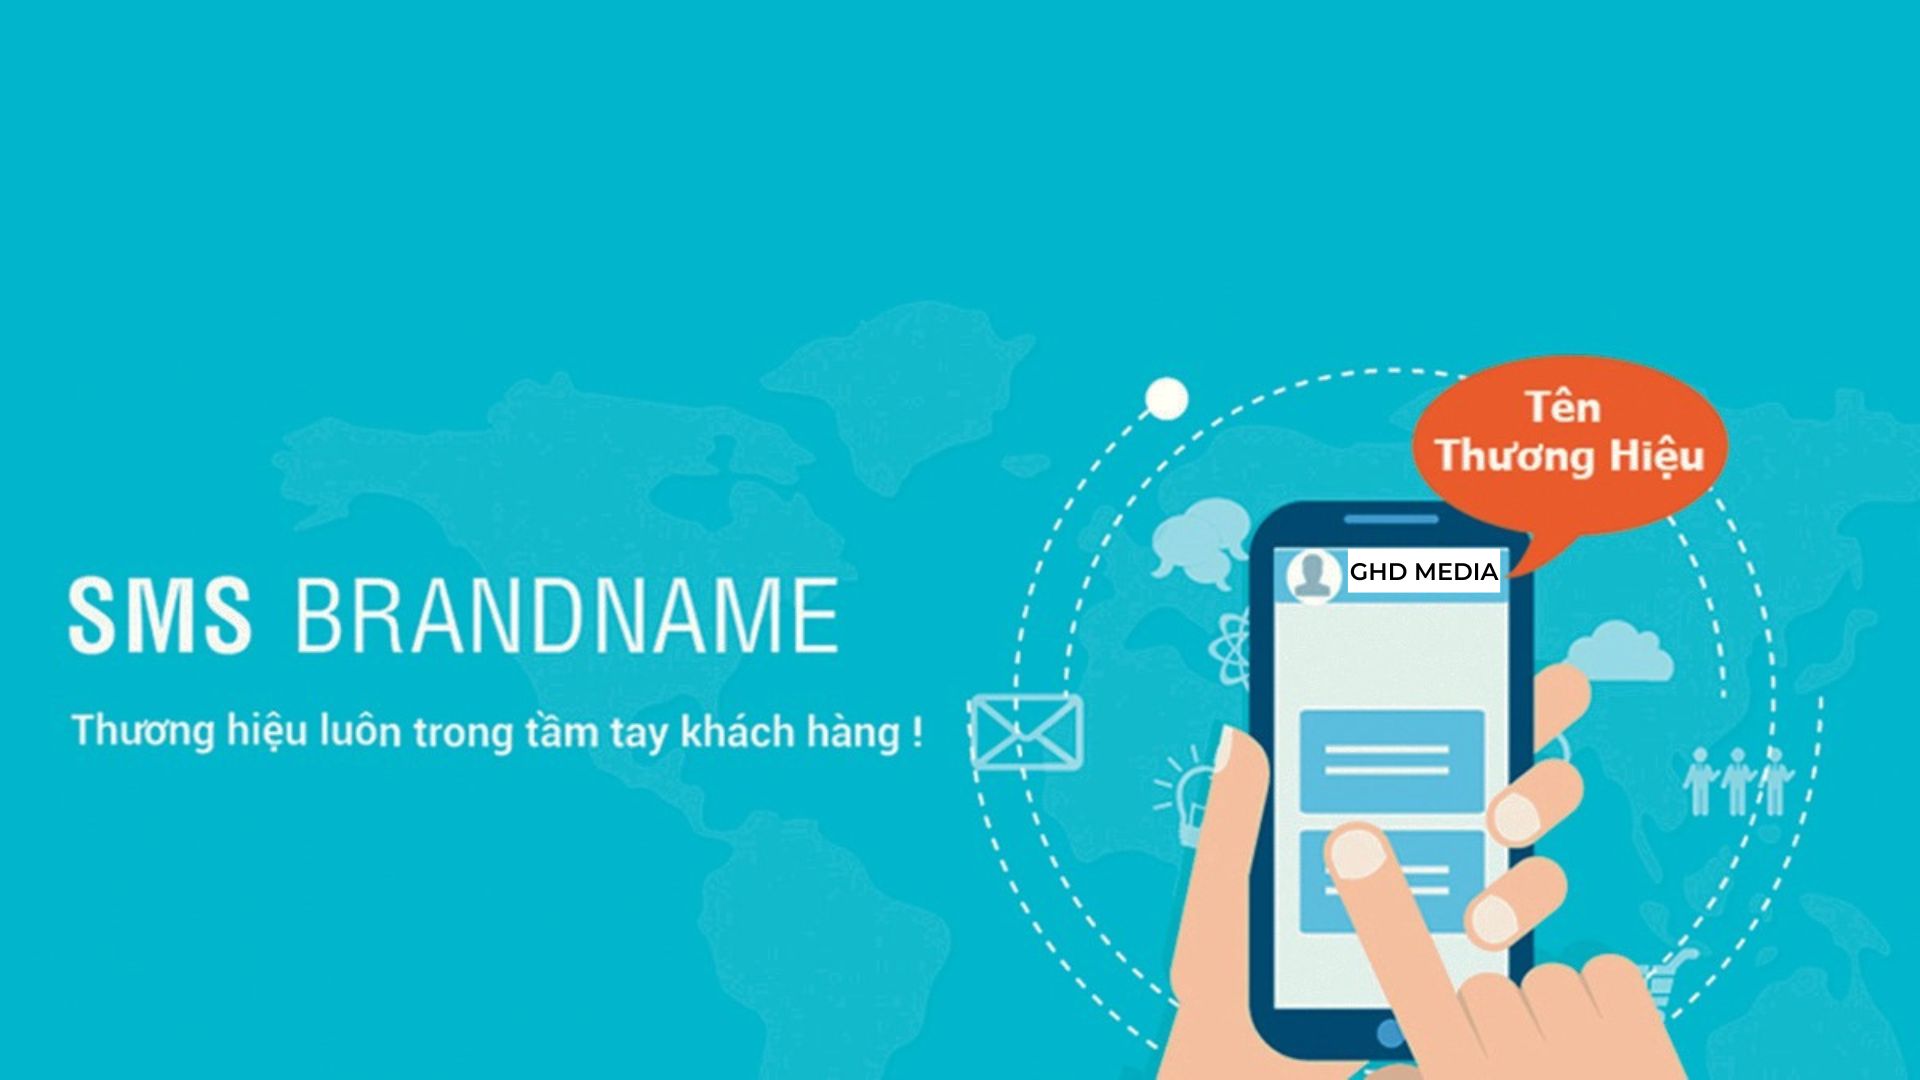 06 cách để tối ưu chiến dịch SMS Brandname hiệu quả mà bạn cần biết